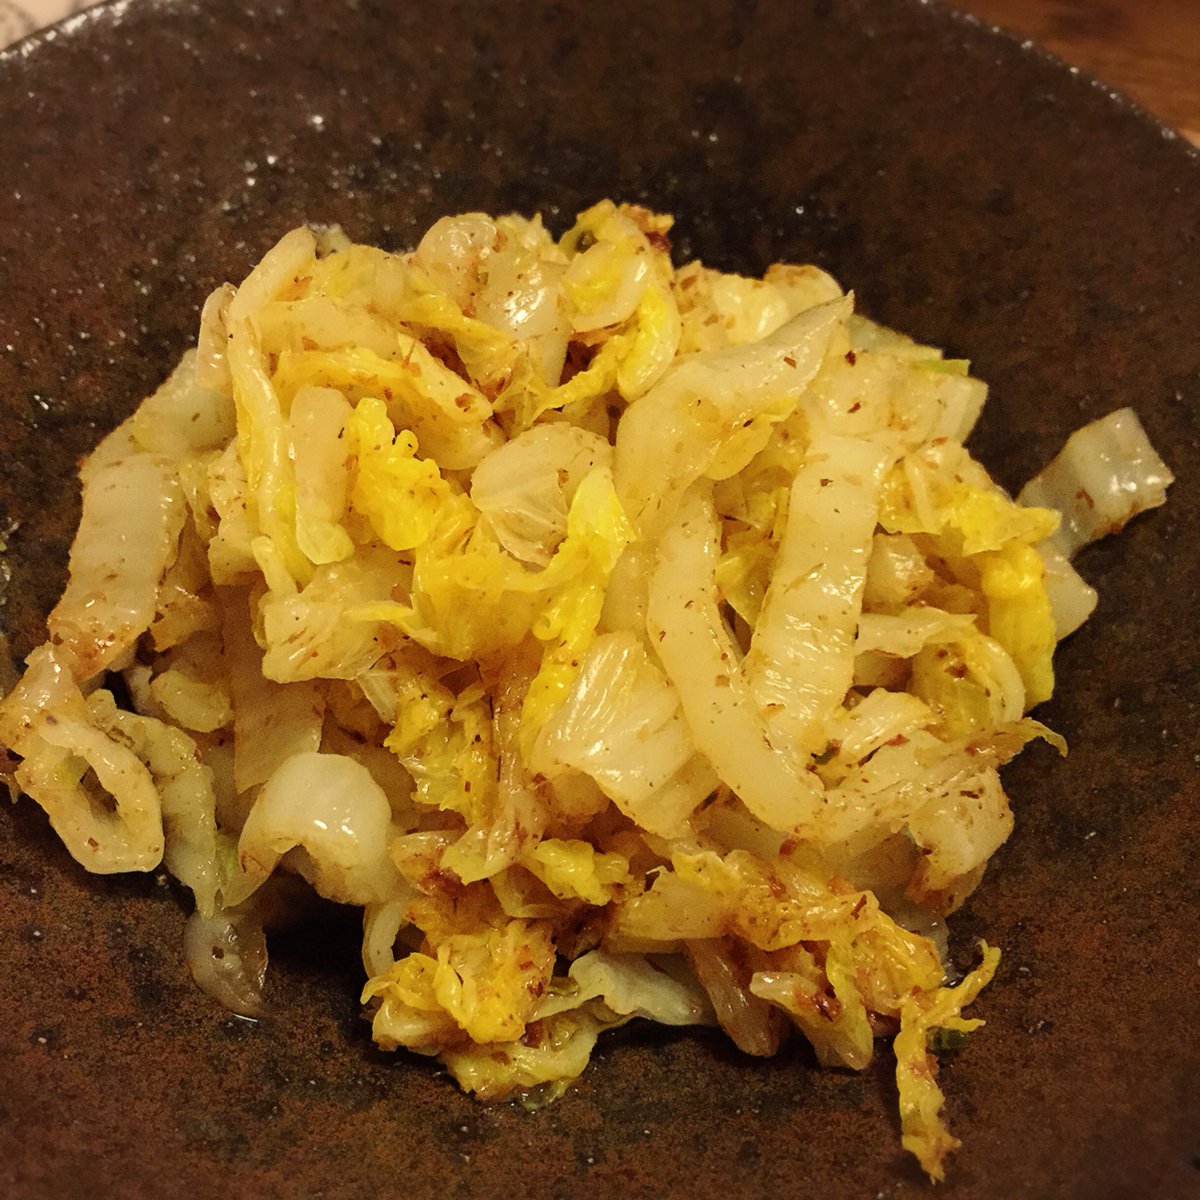 Oharubiyori 白菜のおひたし 白菜の美味しい季節ですが 鍋物で残ることも多いですよね そんな時に是非おすすめなのが おひたしです 茹でてしっかり水気を絞って 茅乃舎だしの袋を開けてよくまぶしてだし醤油でいただきます 白菜があま い 茅乃舎